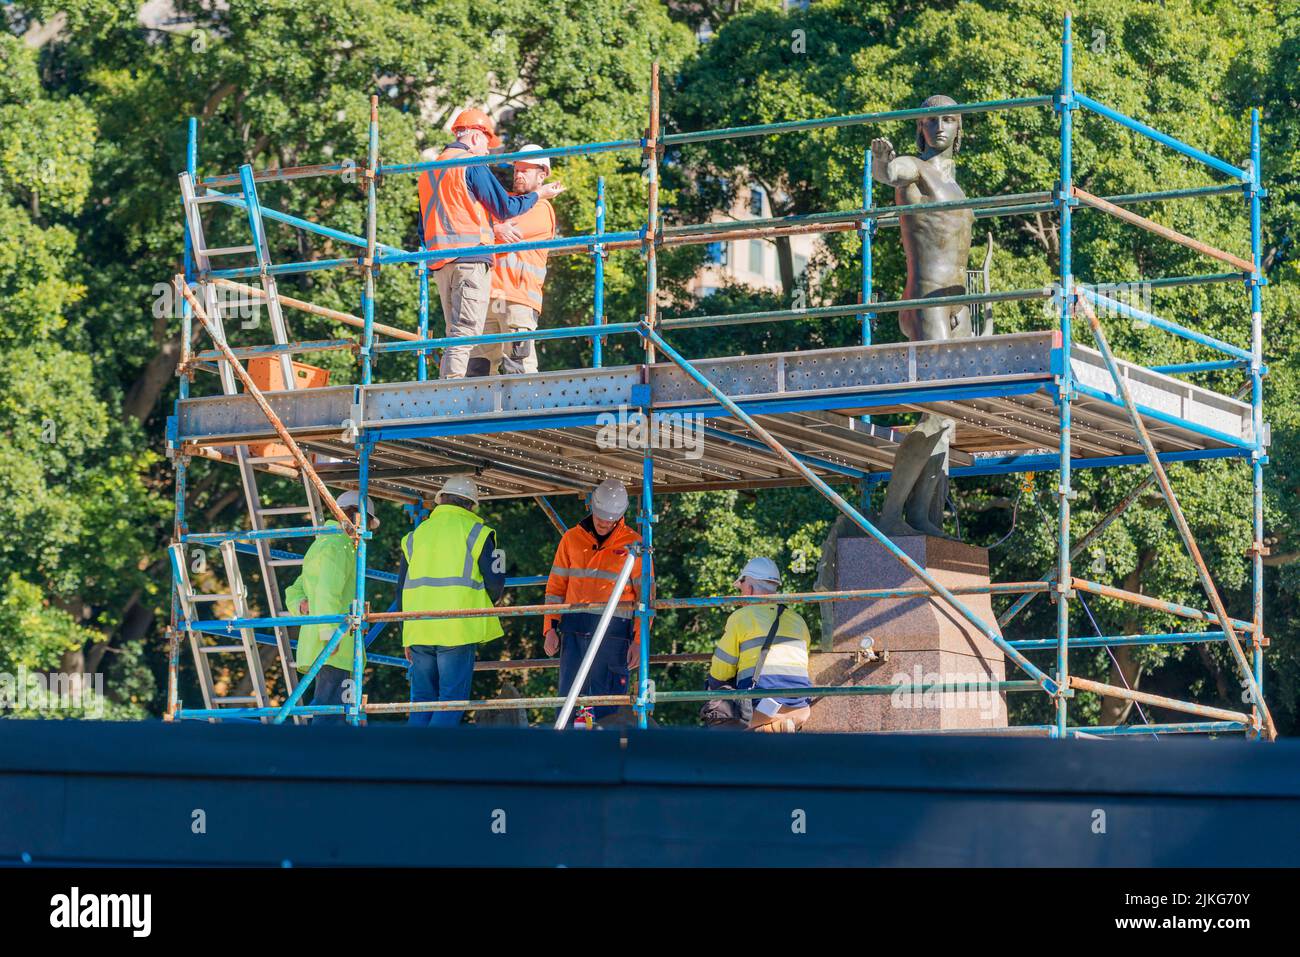 A finales de 2022, la Archibald Memorial Fountain en Hyde Park de Sydney está siendo sometida a una importante renovación, incluyendo trabajos hidráulicos, eléctricos y estructurales Foto de stock